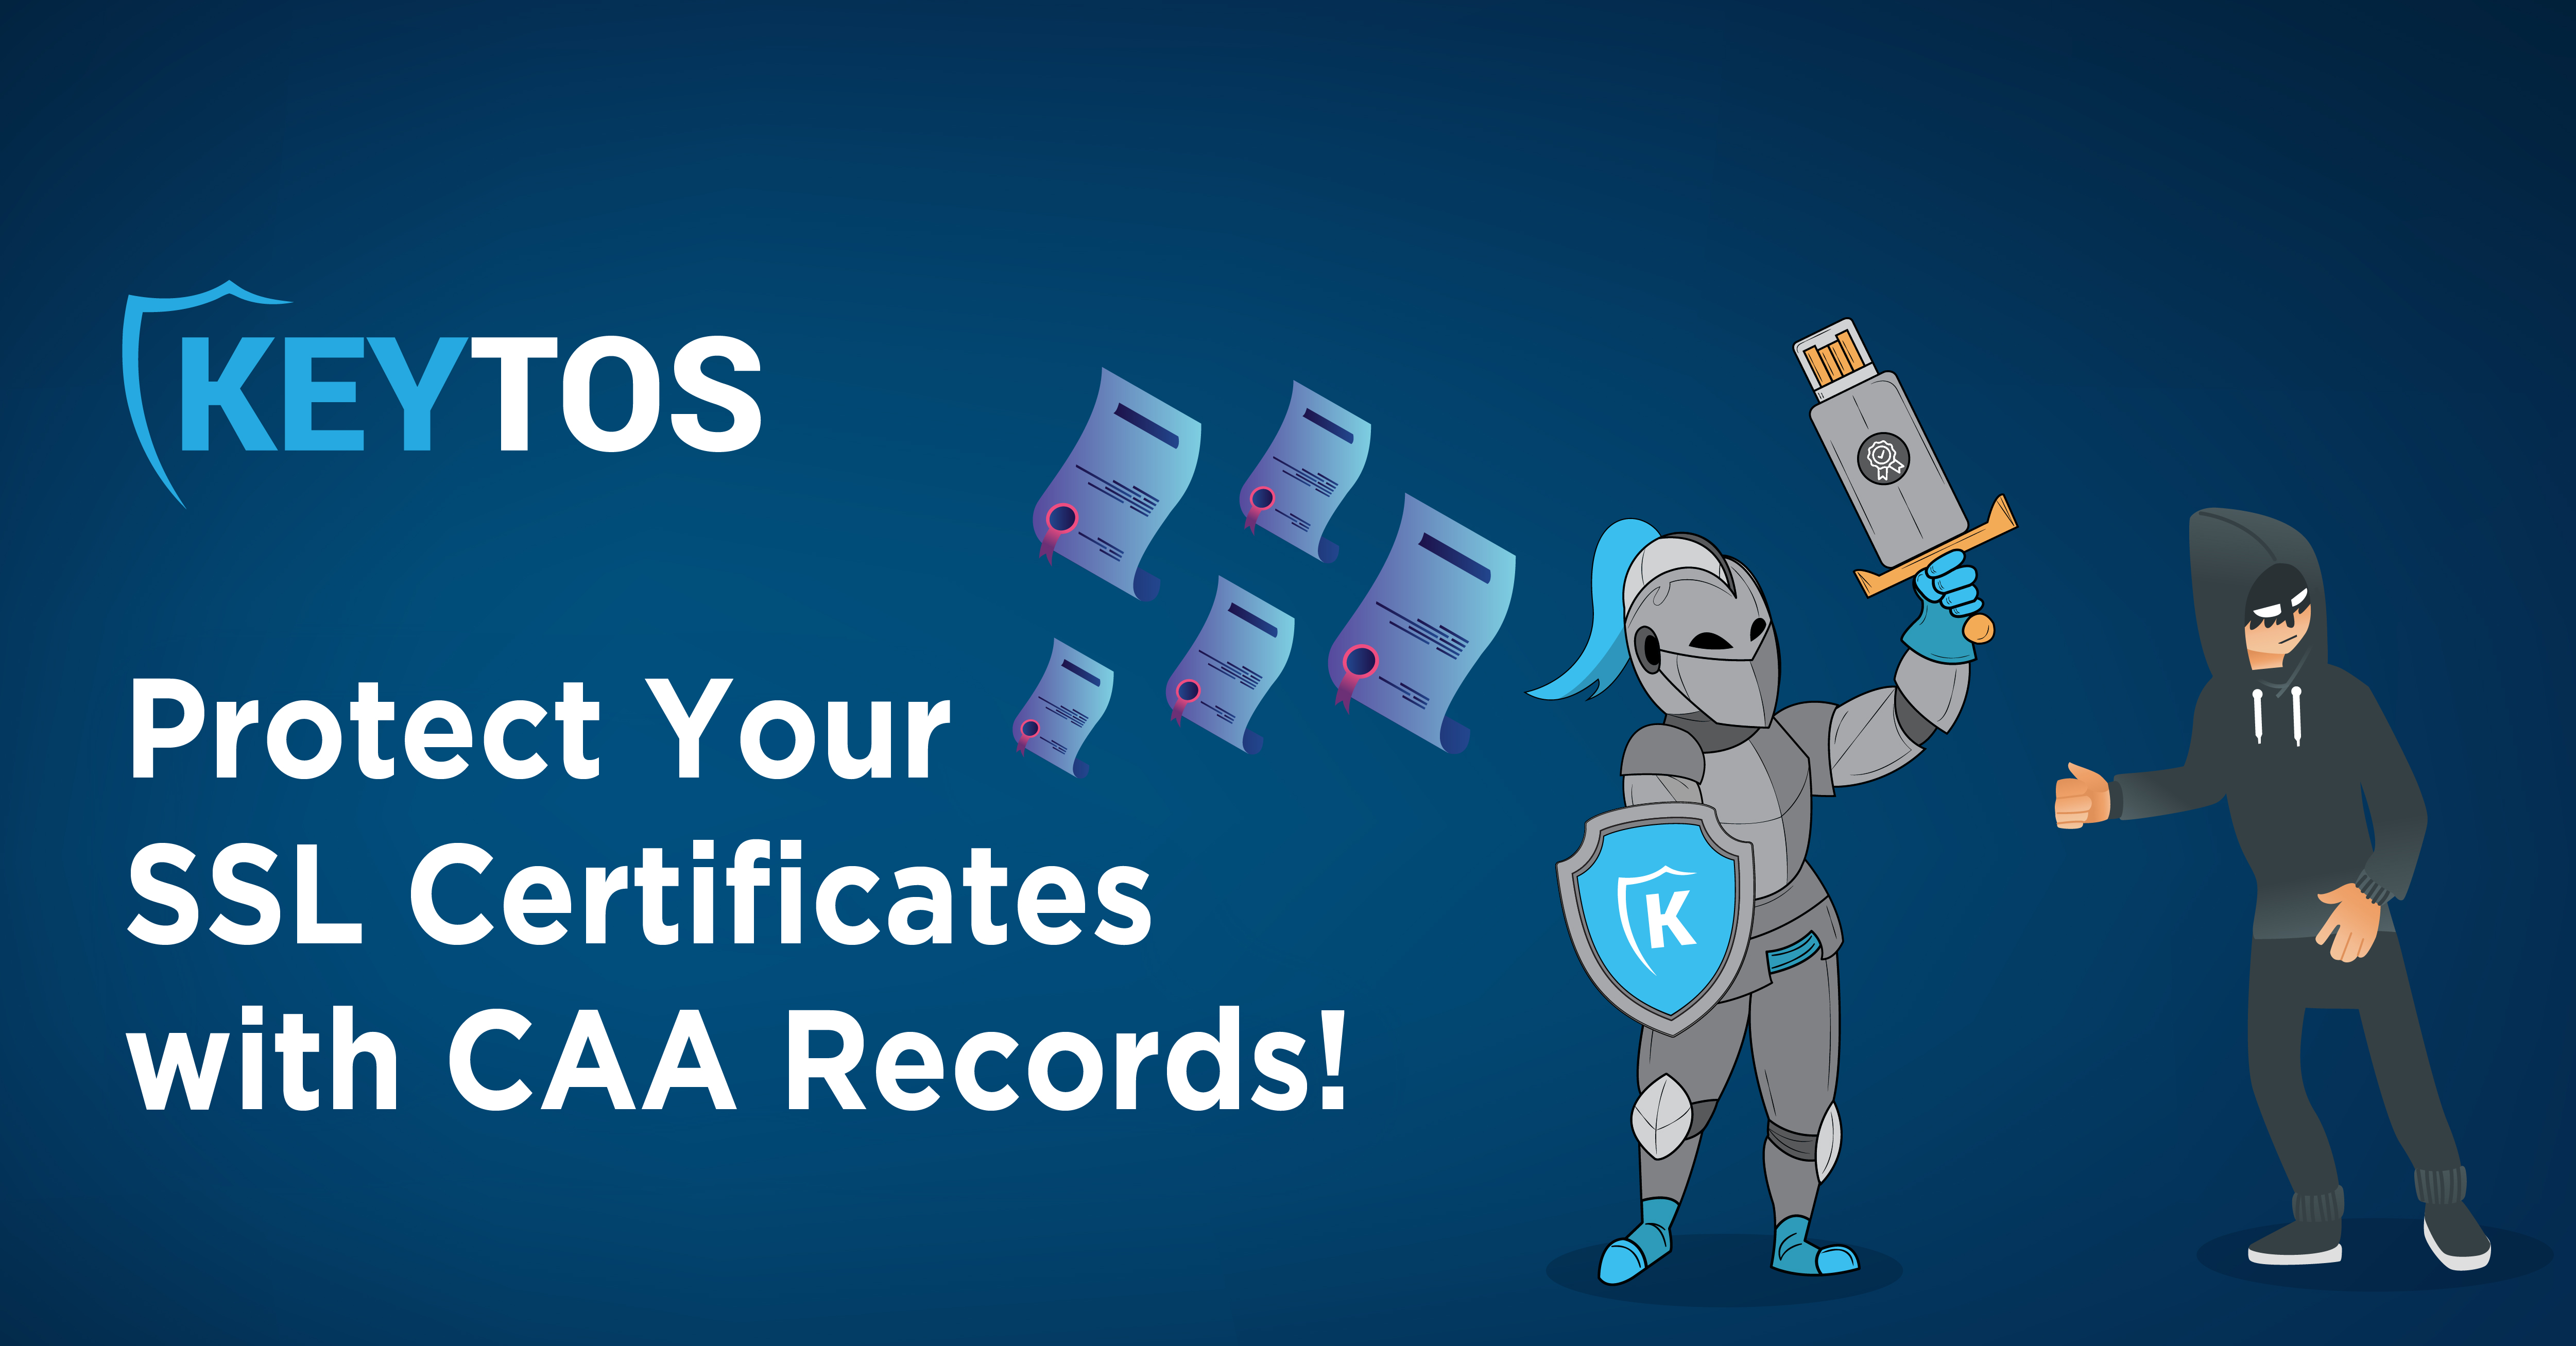 ¡Proteja sus Certificados SSL con Registros CAA!